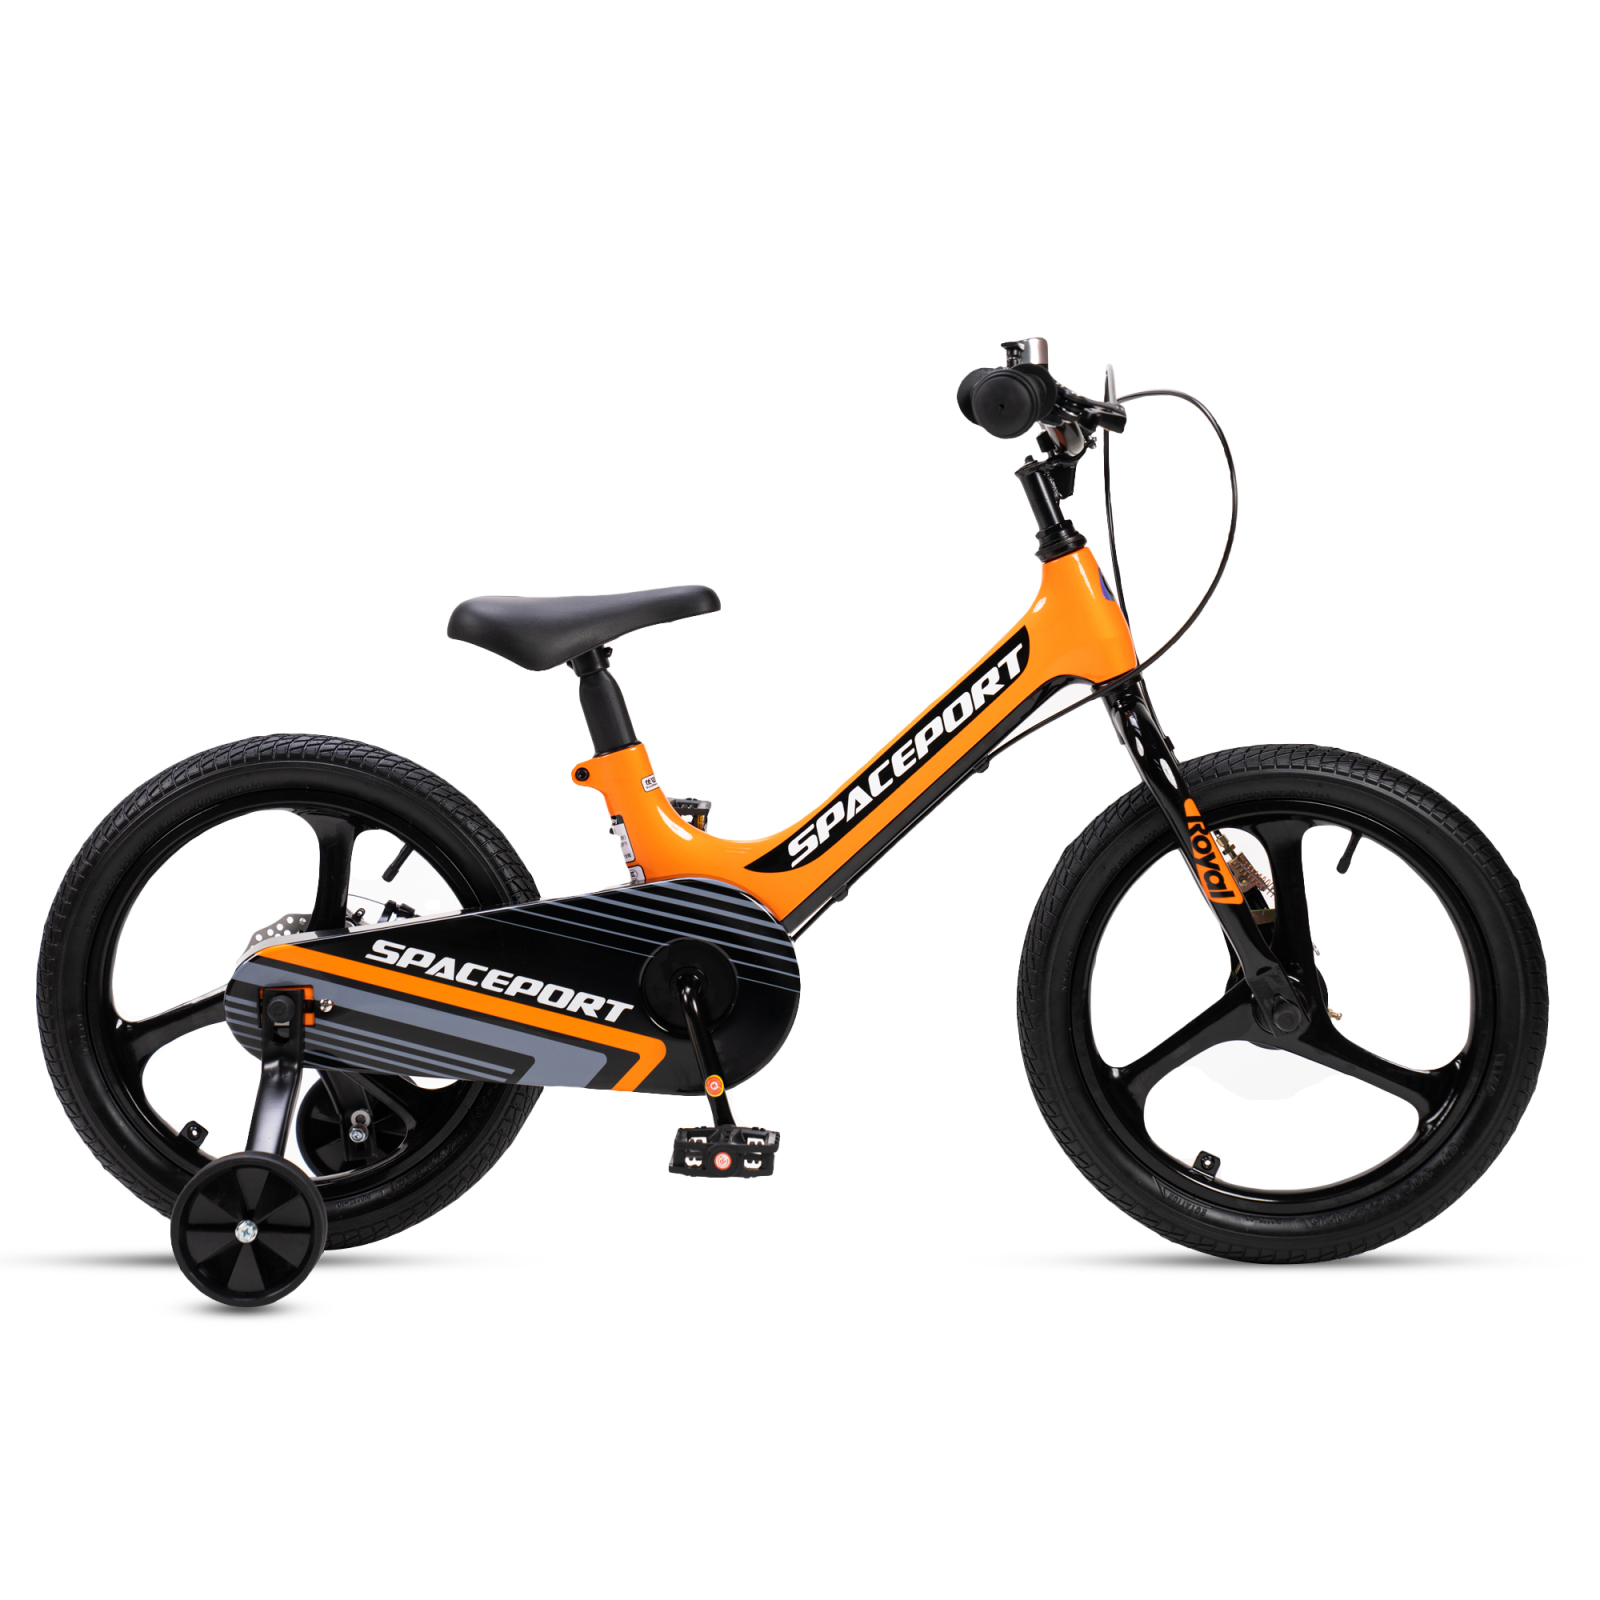 Детский велосипед Royal Baby Space Port 18", Official UA, оранжевый (RB18-31-orange)